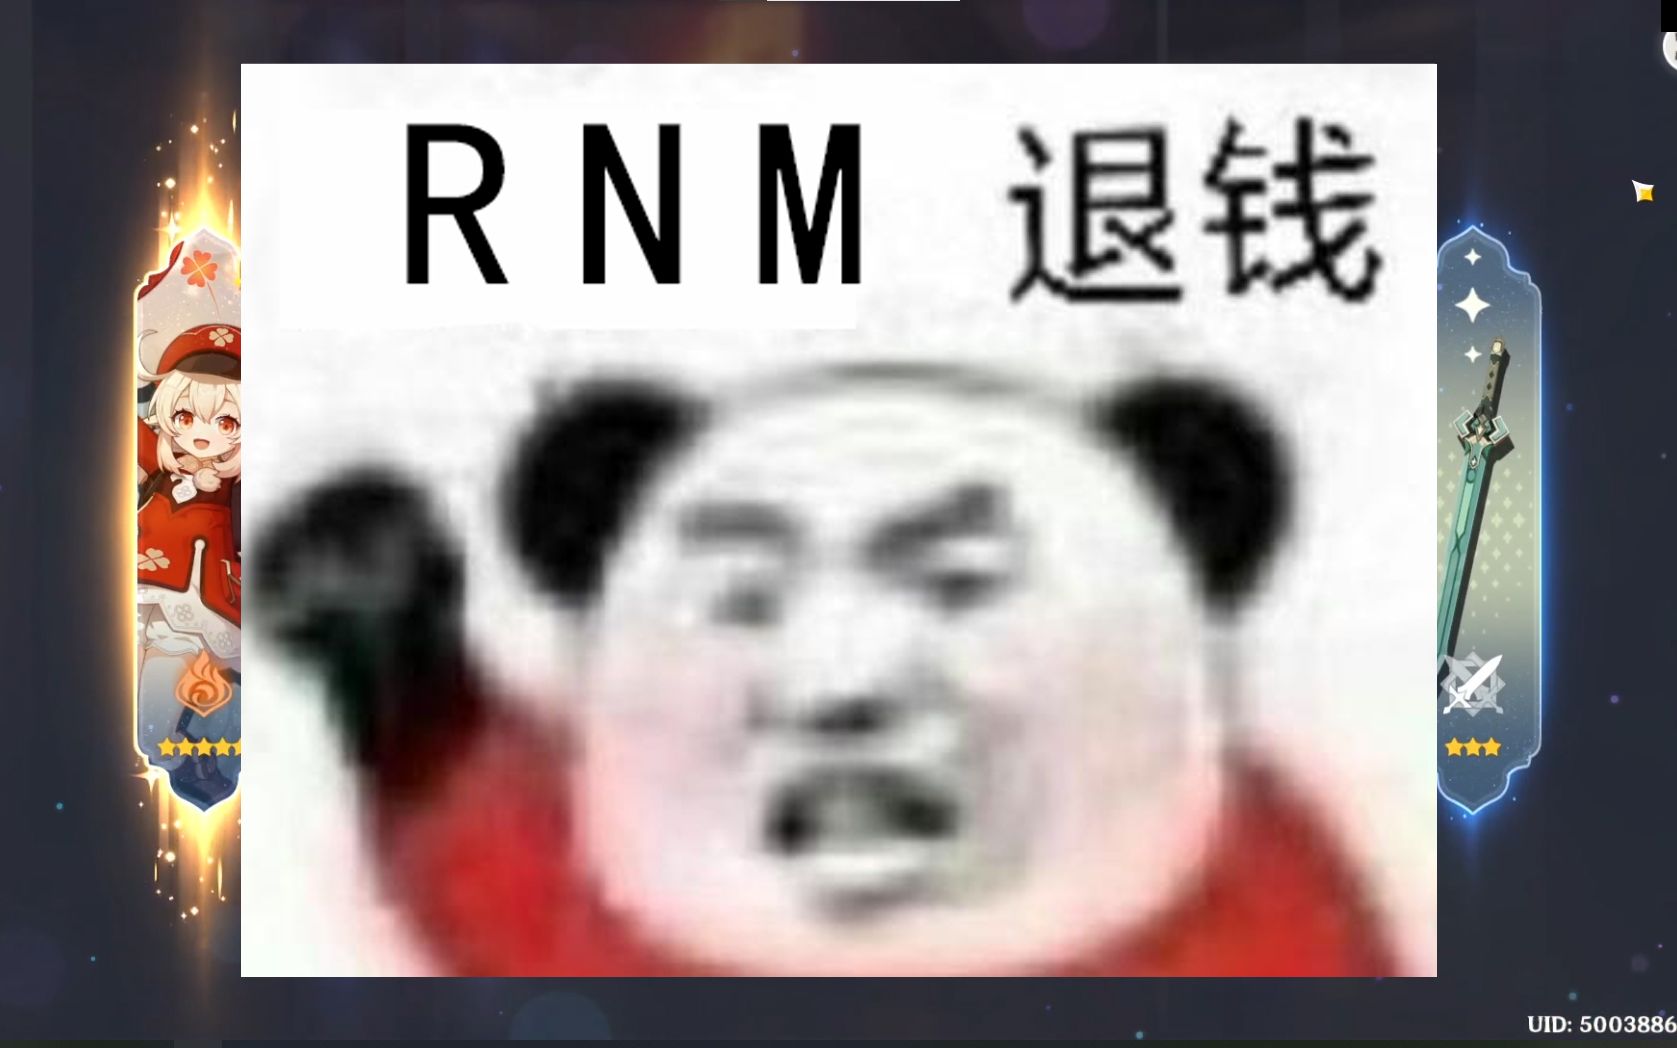 rnm 退钱 表情包图片